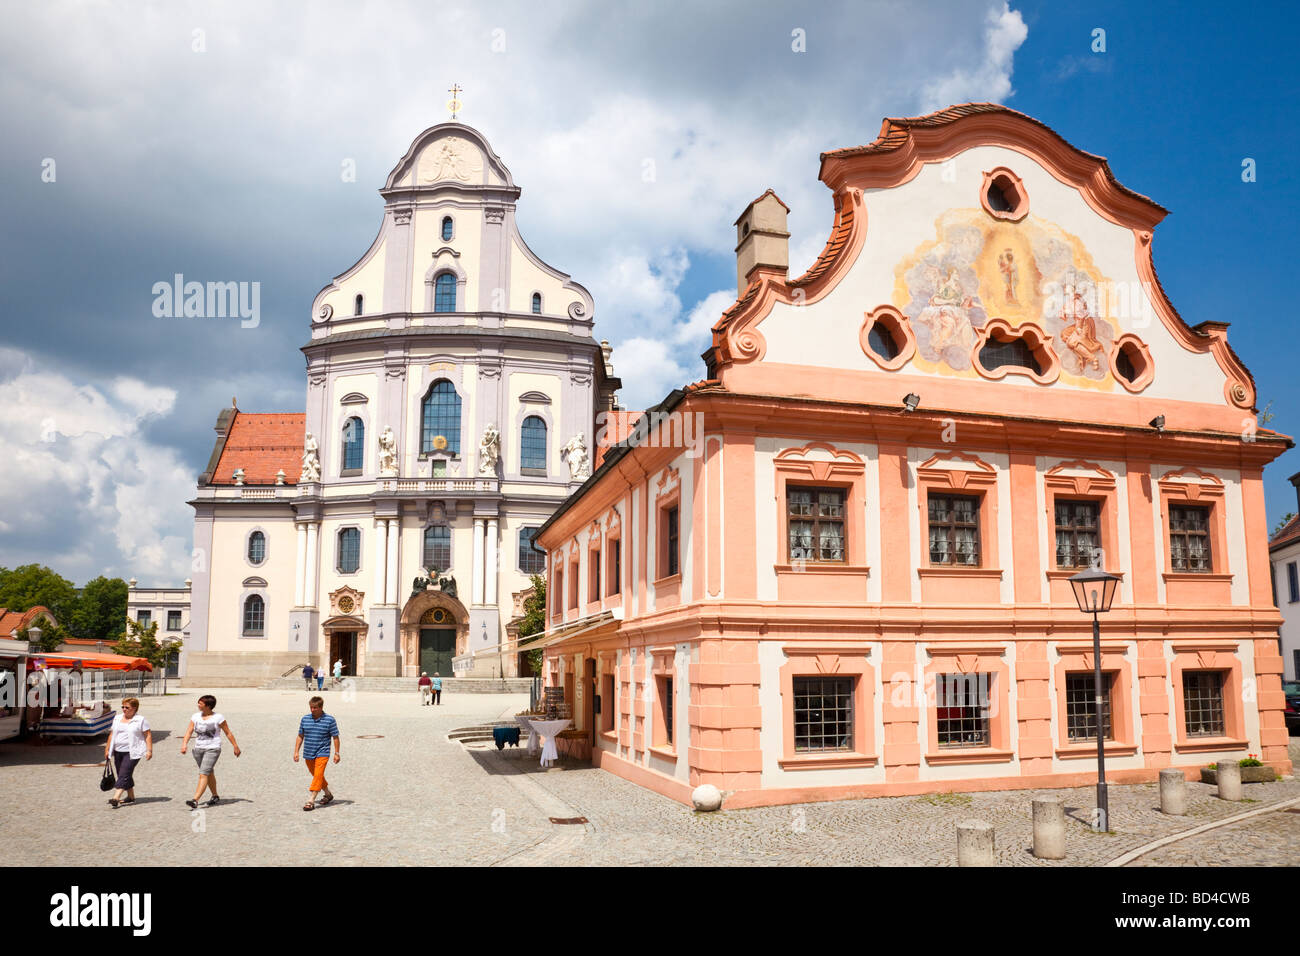 Altotting Bayern Deutschland Europa - Saint Anne Basilica und Haus mit religiösen Fresko Kunst Stockfoto